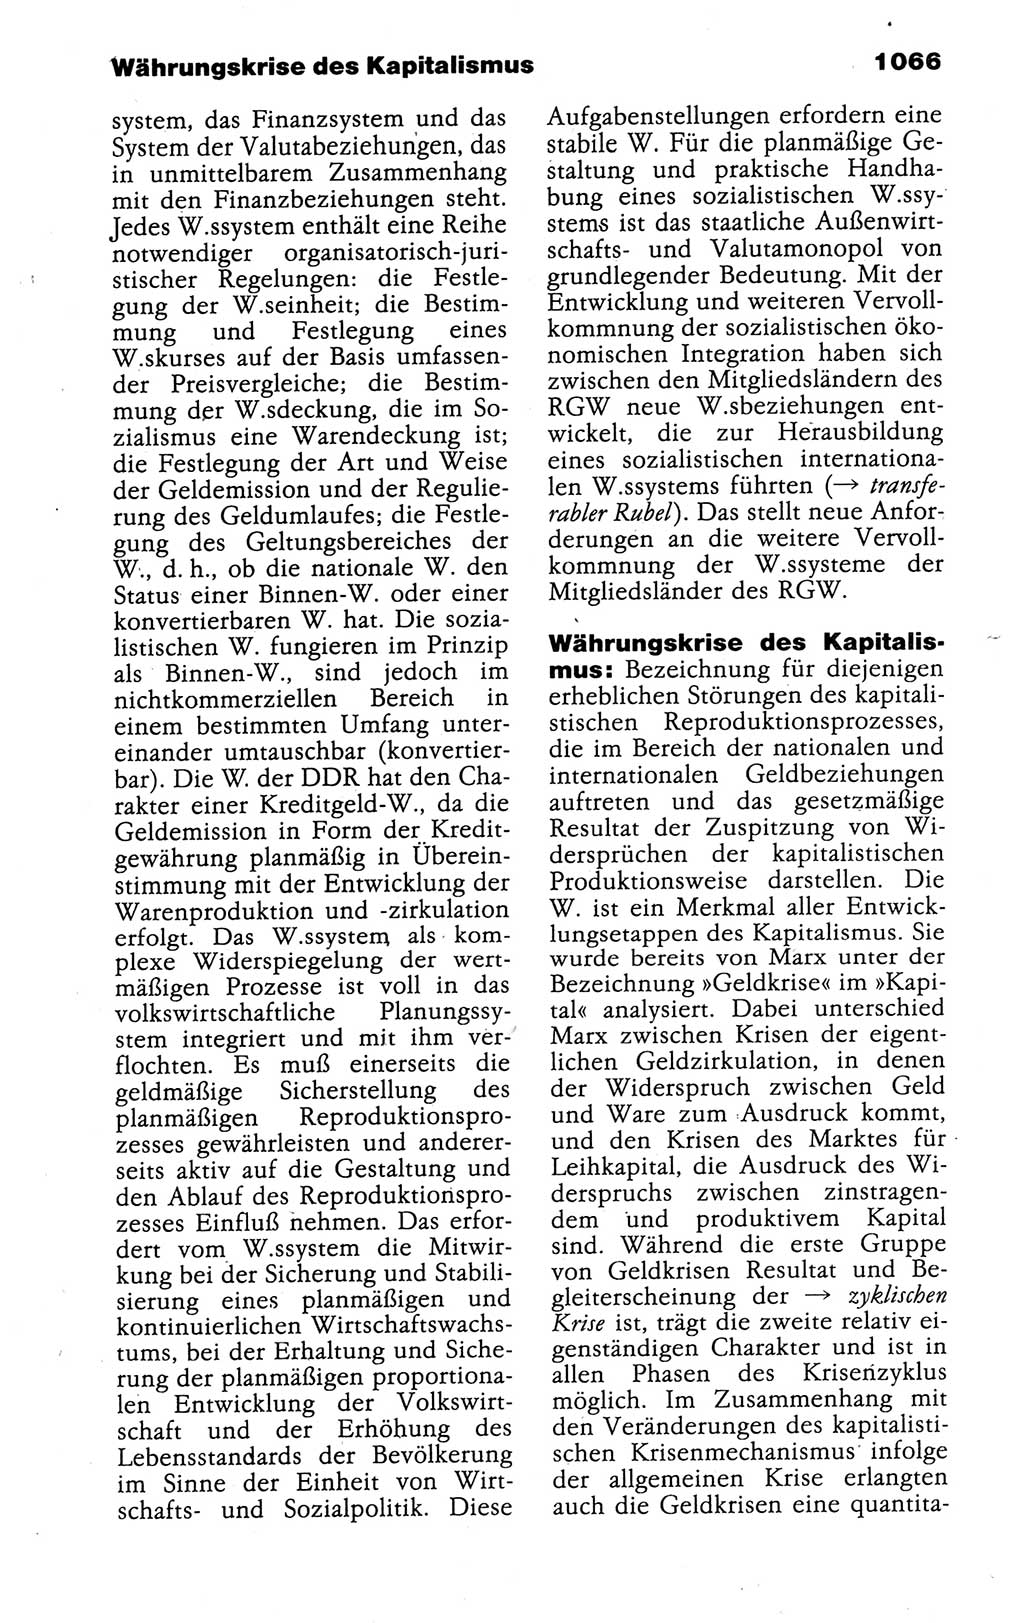 Kleines politisches Wörterbuch [Deutsche Demokratische Republik (DDR)] 1988, Seite 1066 (Kl. pol. Wb. DDR 1988, S. 1066)